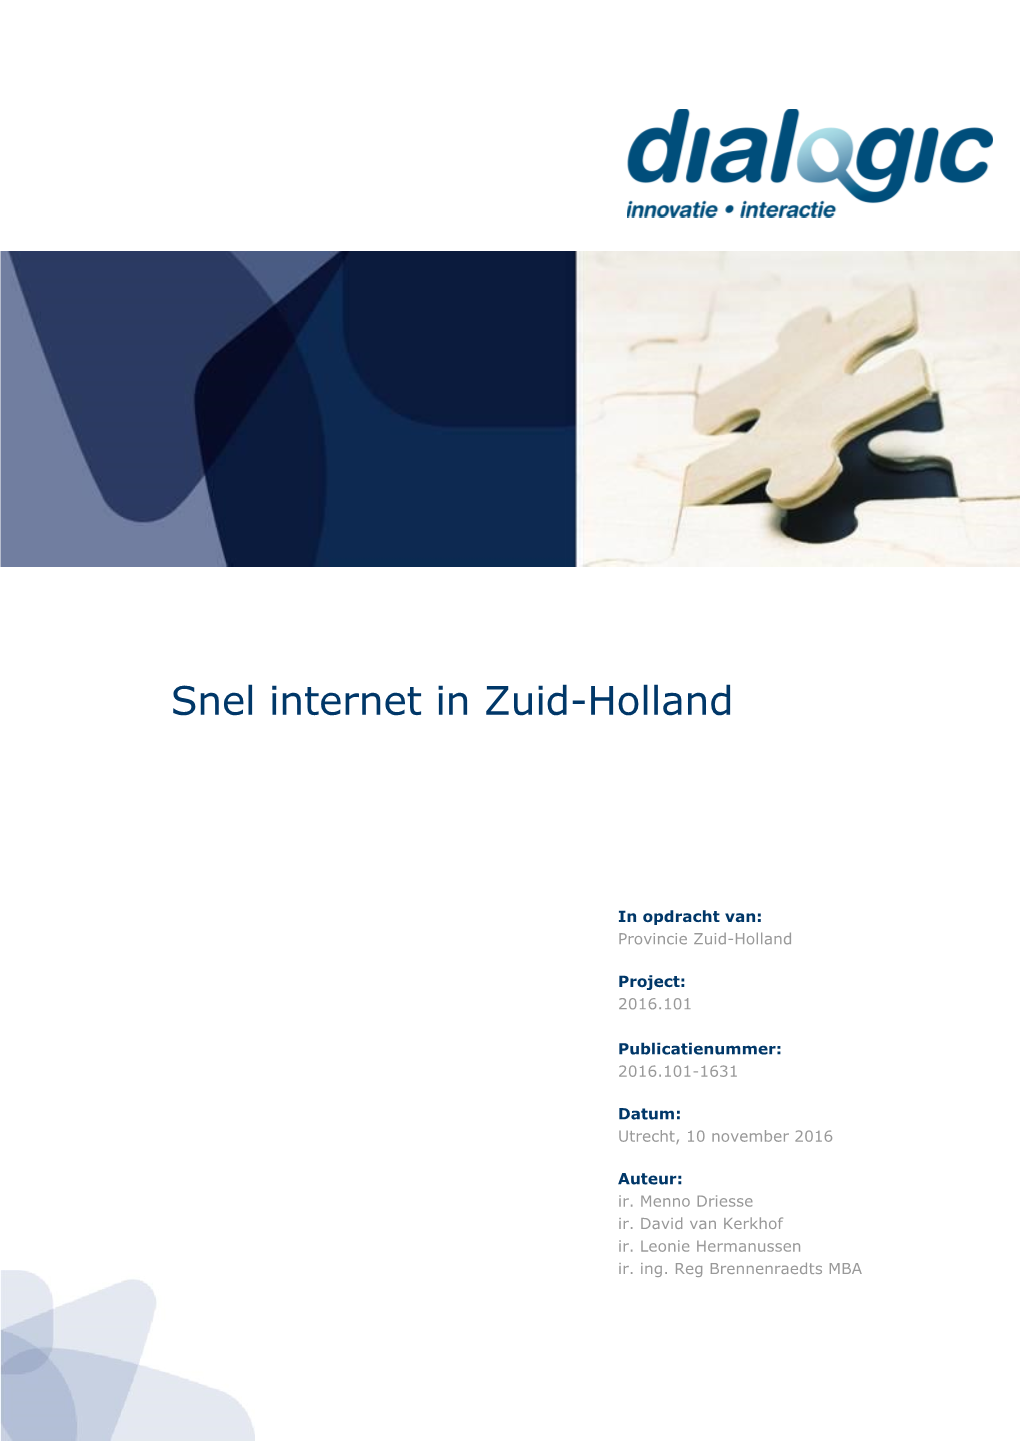 Snel Internet in Zuid-Holland